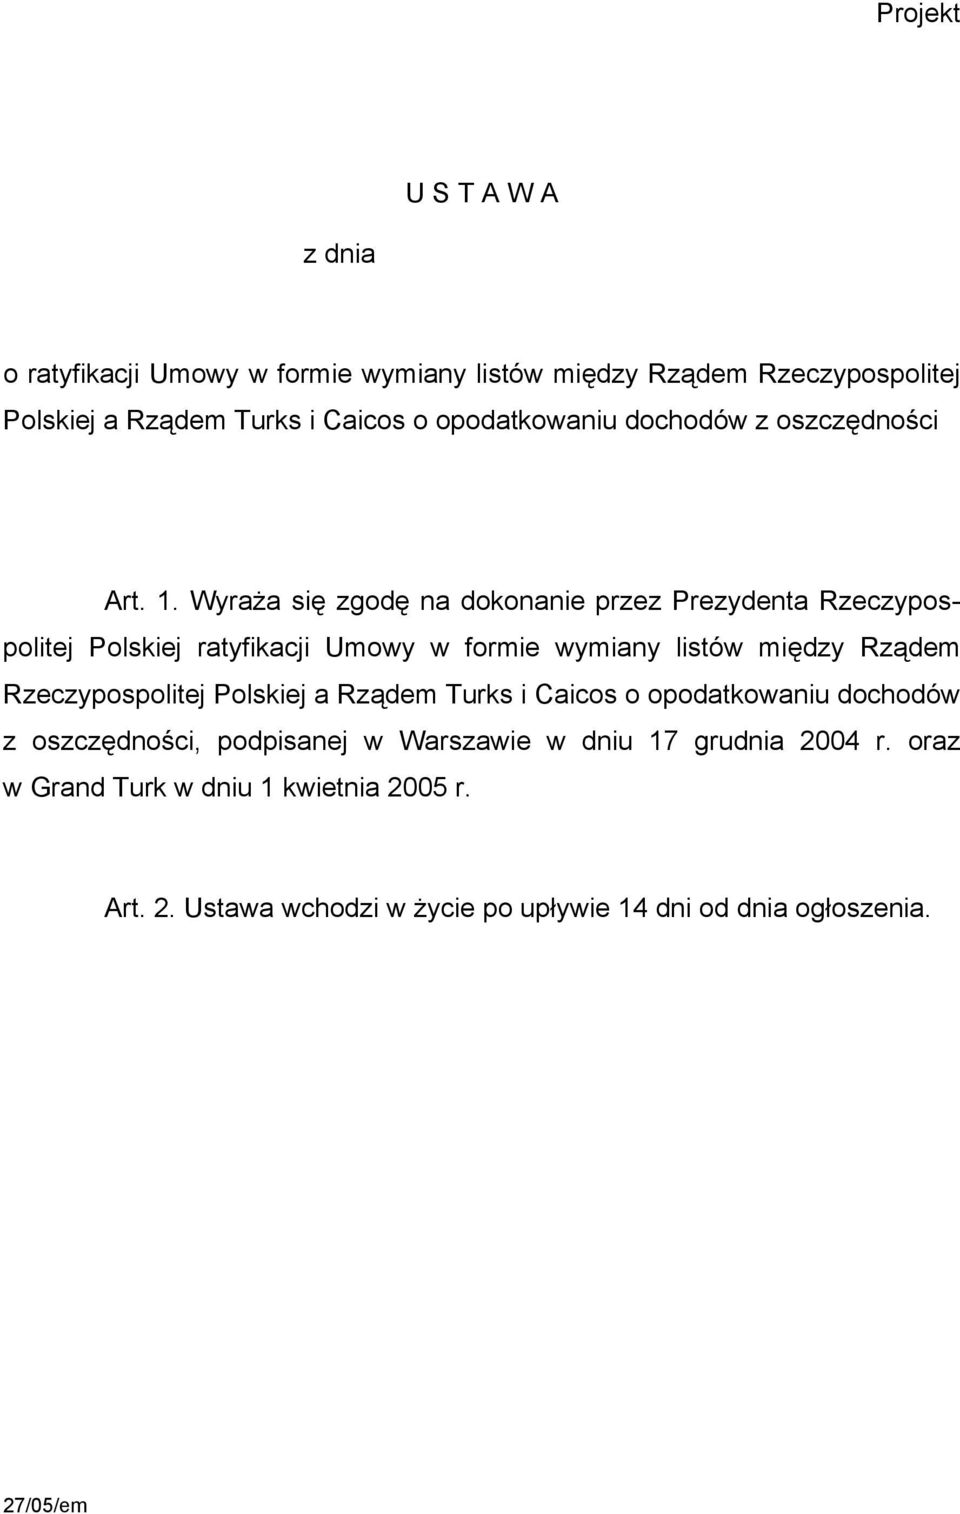 Wyraża się zgodę na dokonanie przez Prezydenta Rzeczypospolitej Polskiej ratyfikacji Umowy w formie wymiany listów między Rządem